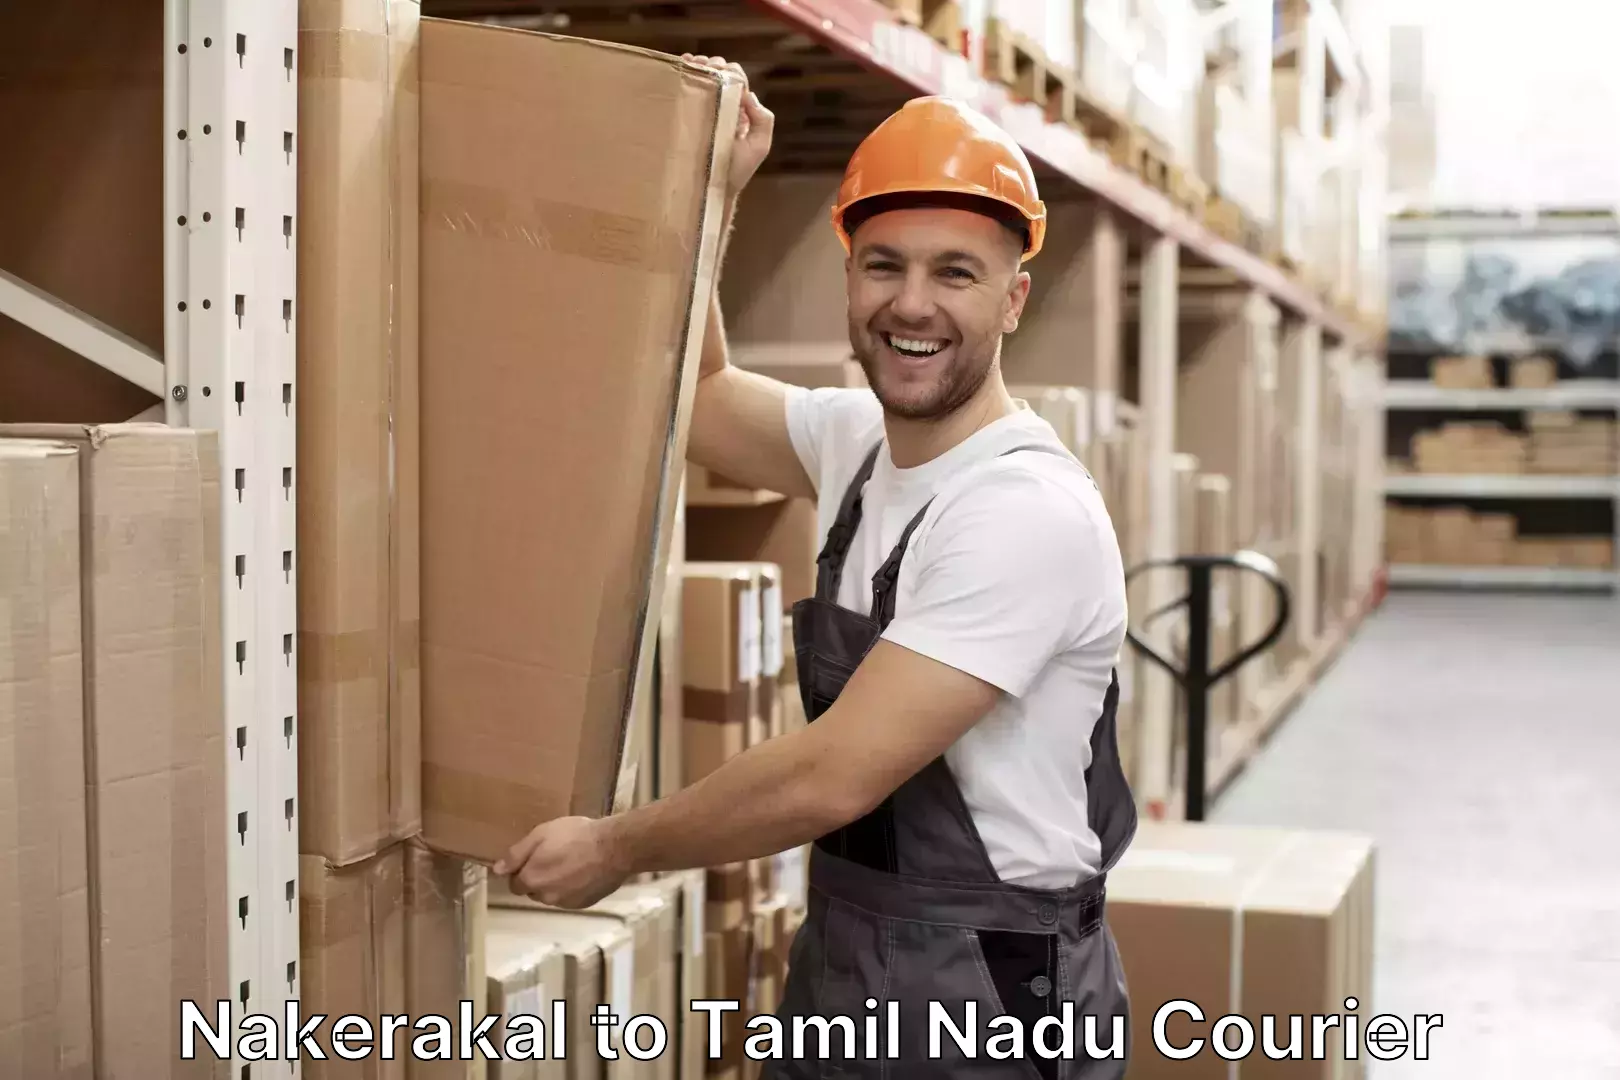 Baggage shipping service Nakerakal to Tiruvarur